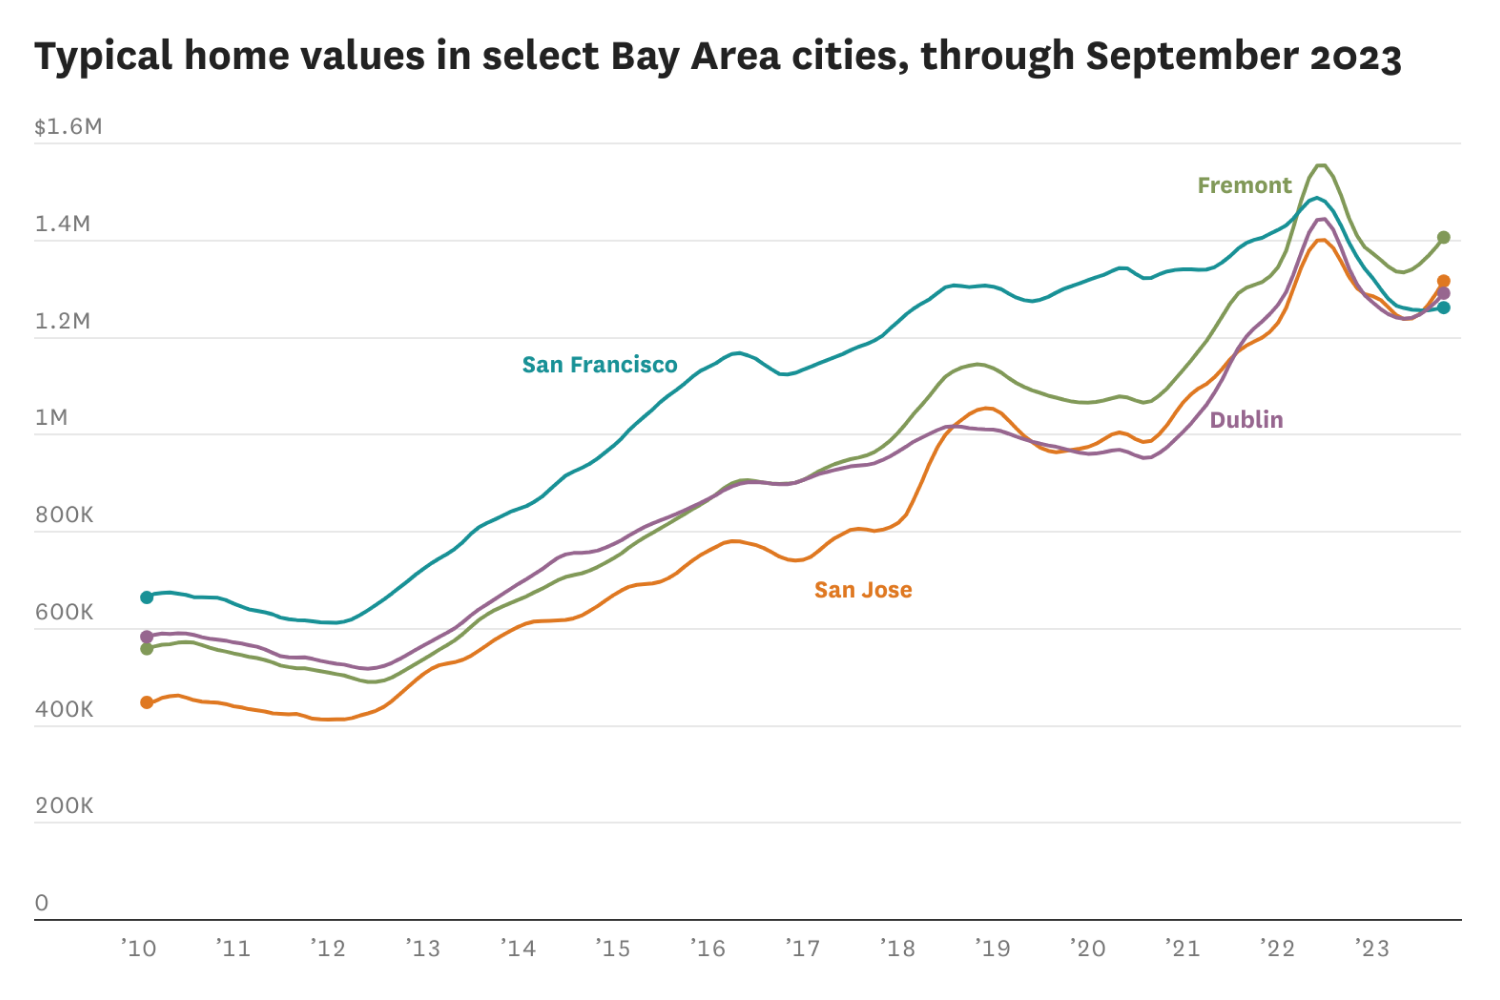 旧金山的房价现在低于这个东湾城市的房价